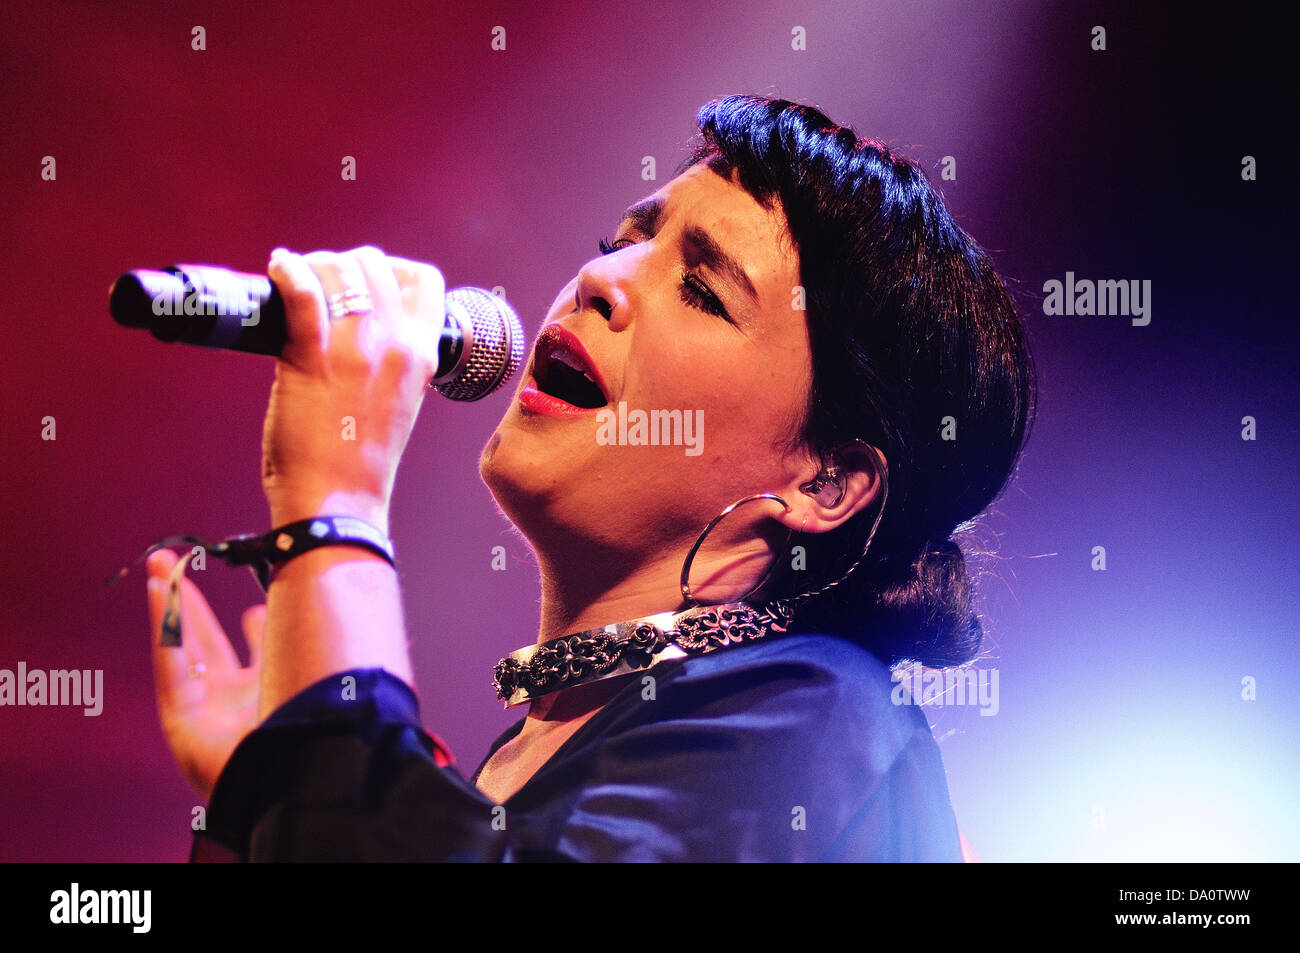 Barcellona - 23 Maggio: Jessie Ware, un cantautore britannico, esegue presso Heineken Primavera Sound Festival 2013. Foto Stock